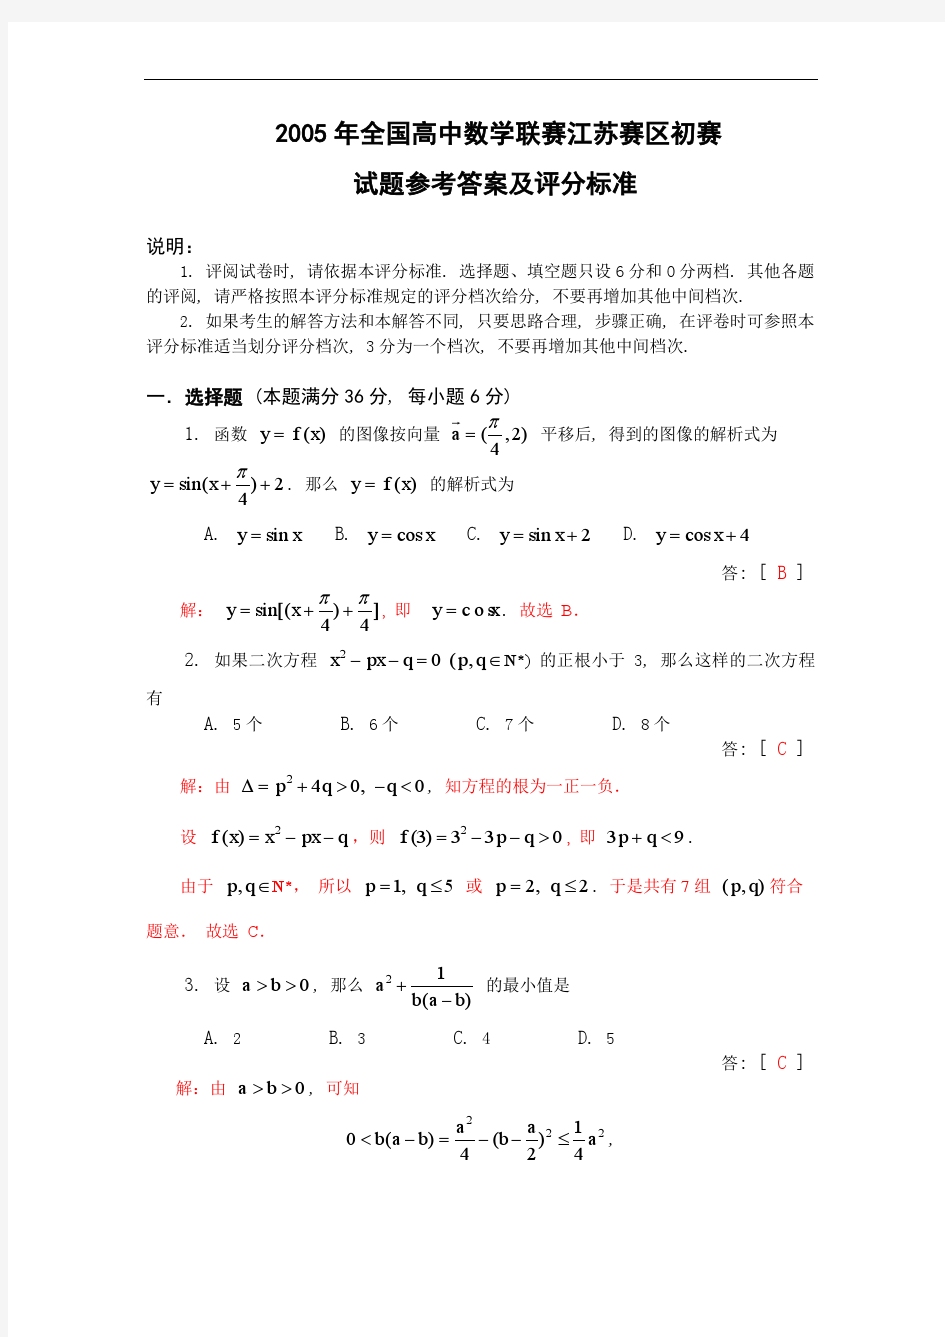 历届江苏高中数学竞赛试题及答案